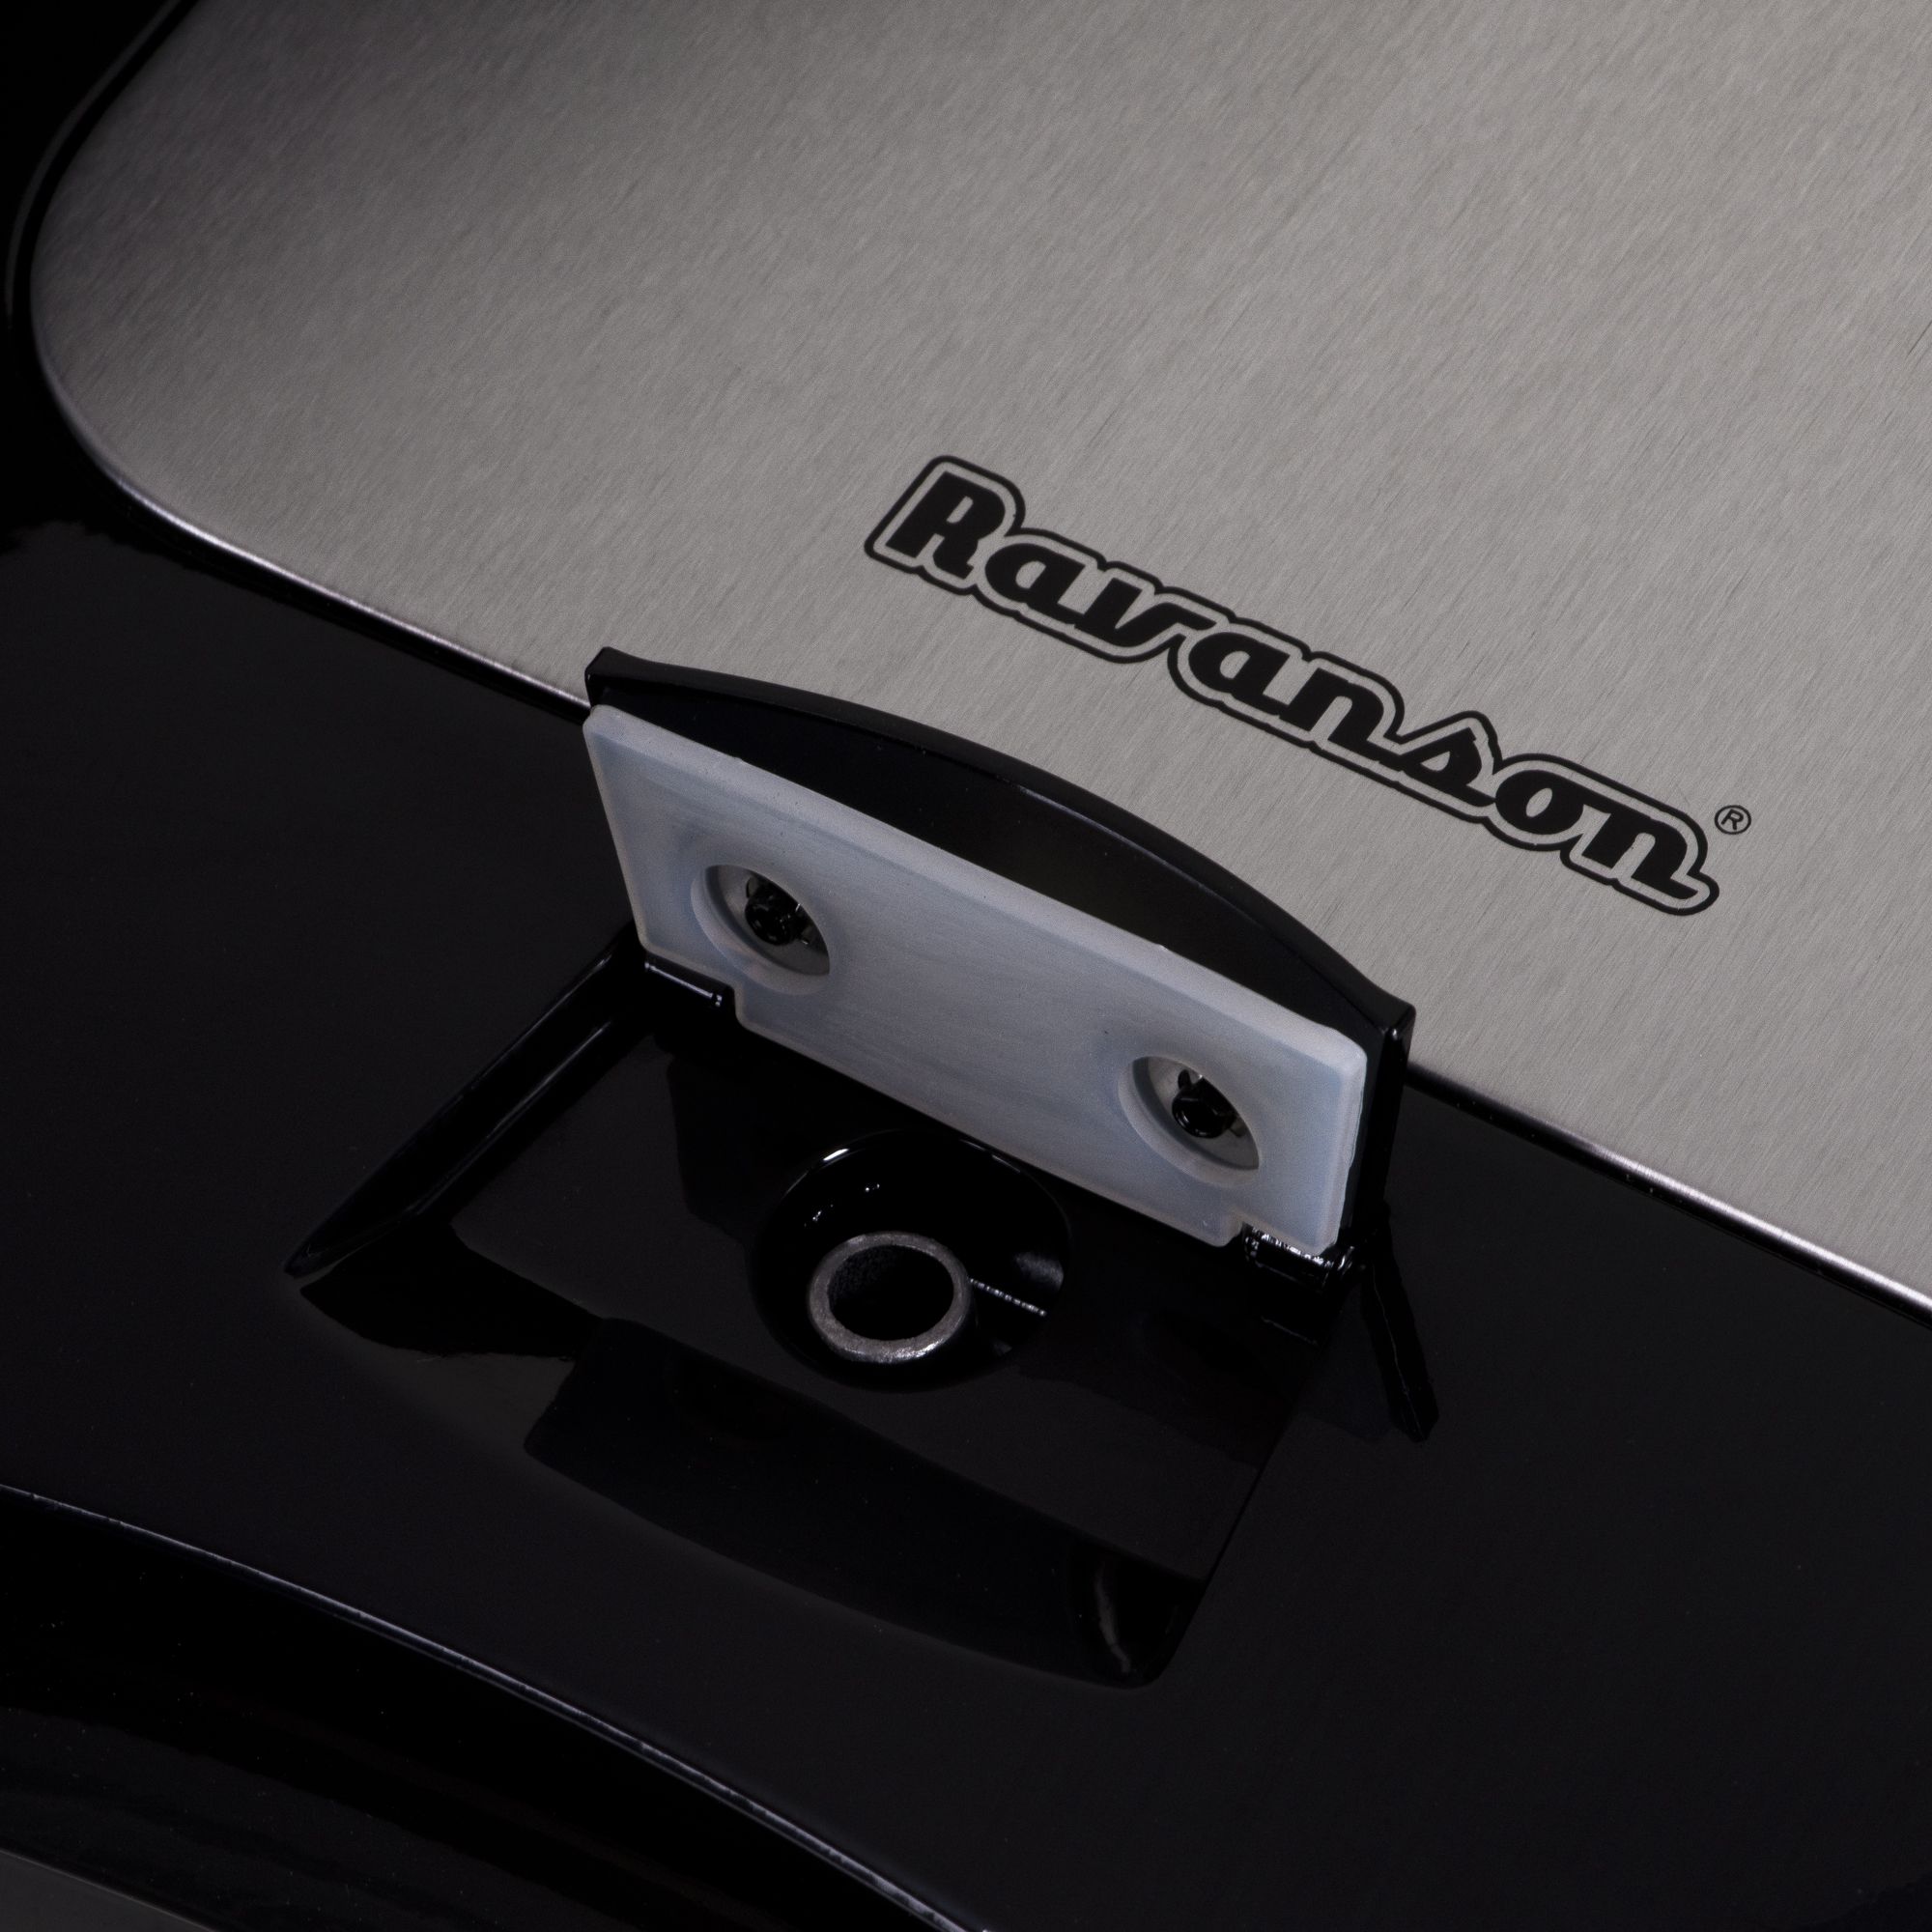 Toaster Ravanson OP-7050 Black, Silver 1200 W_3